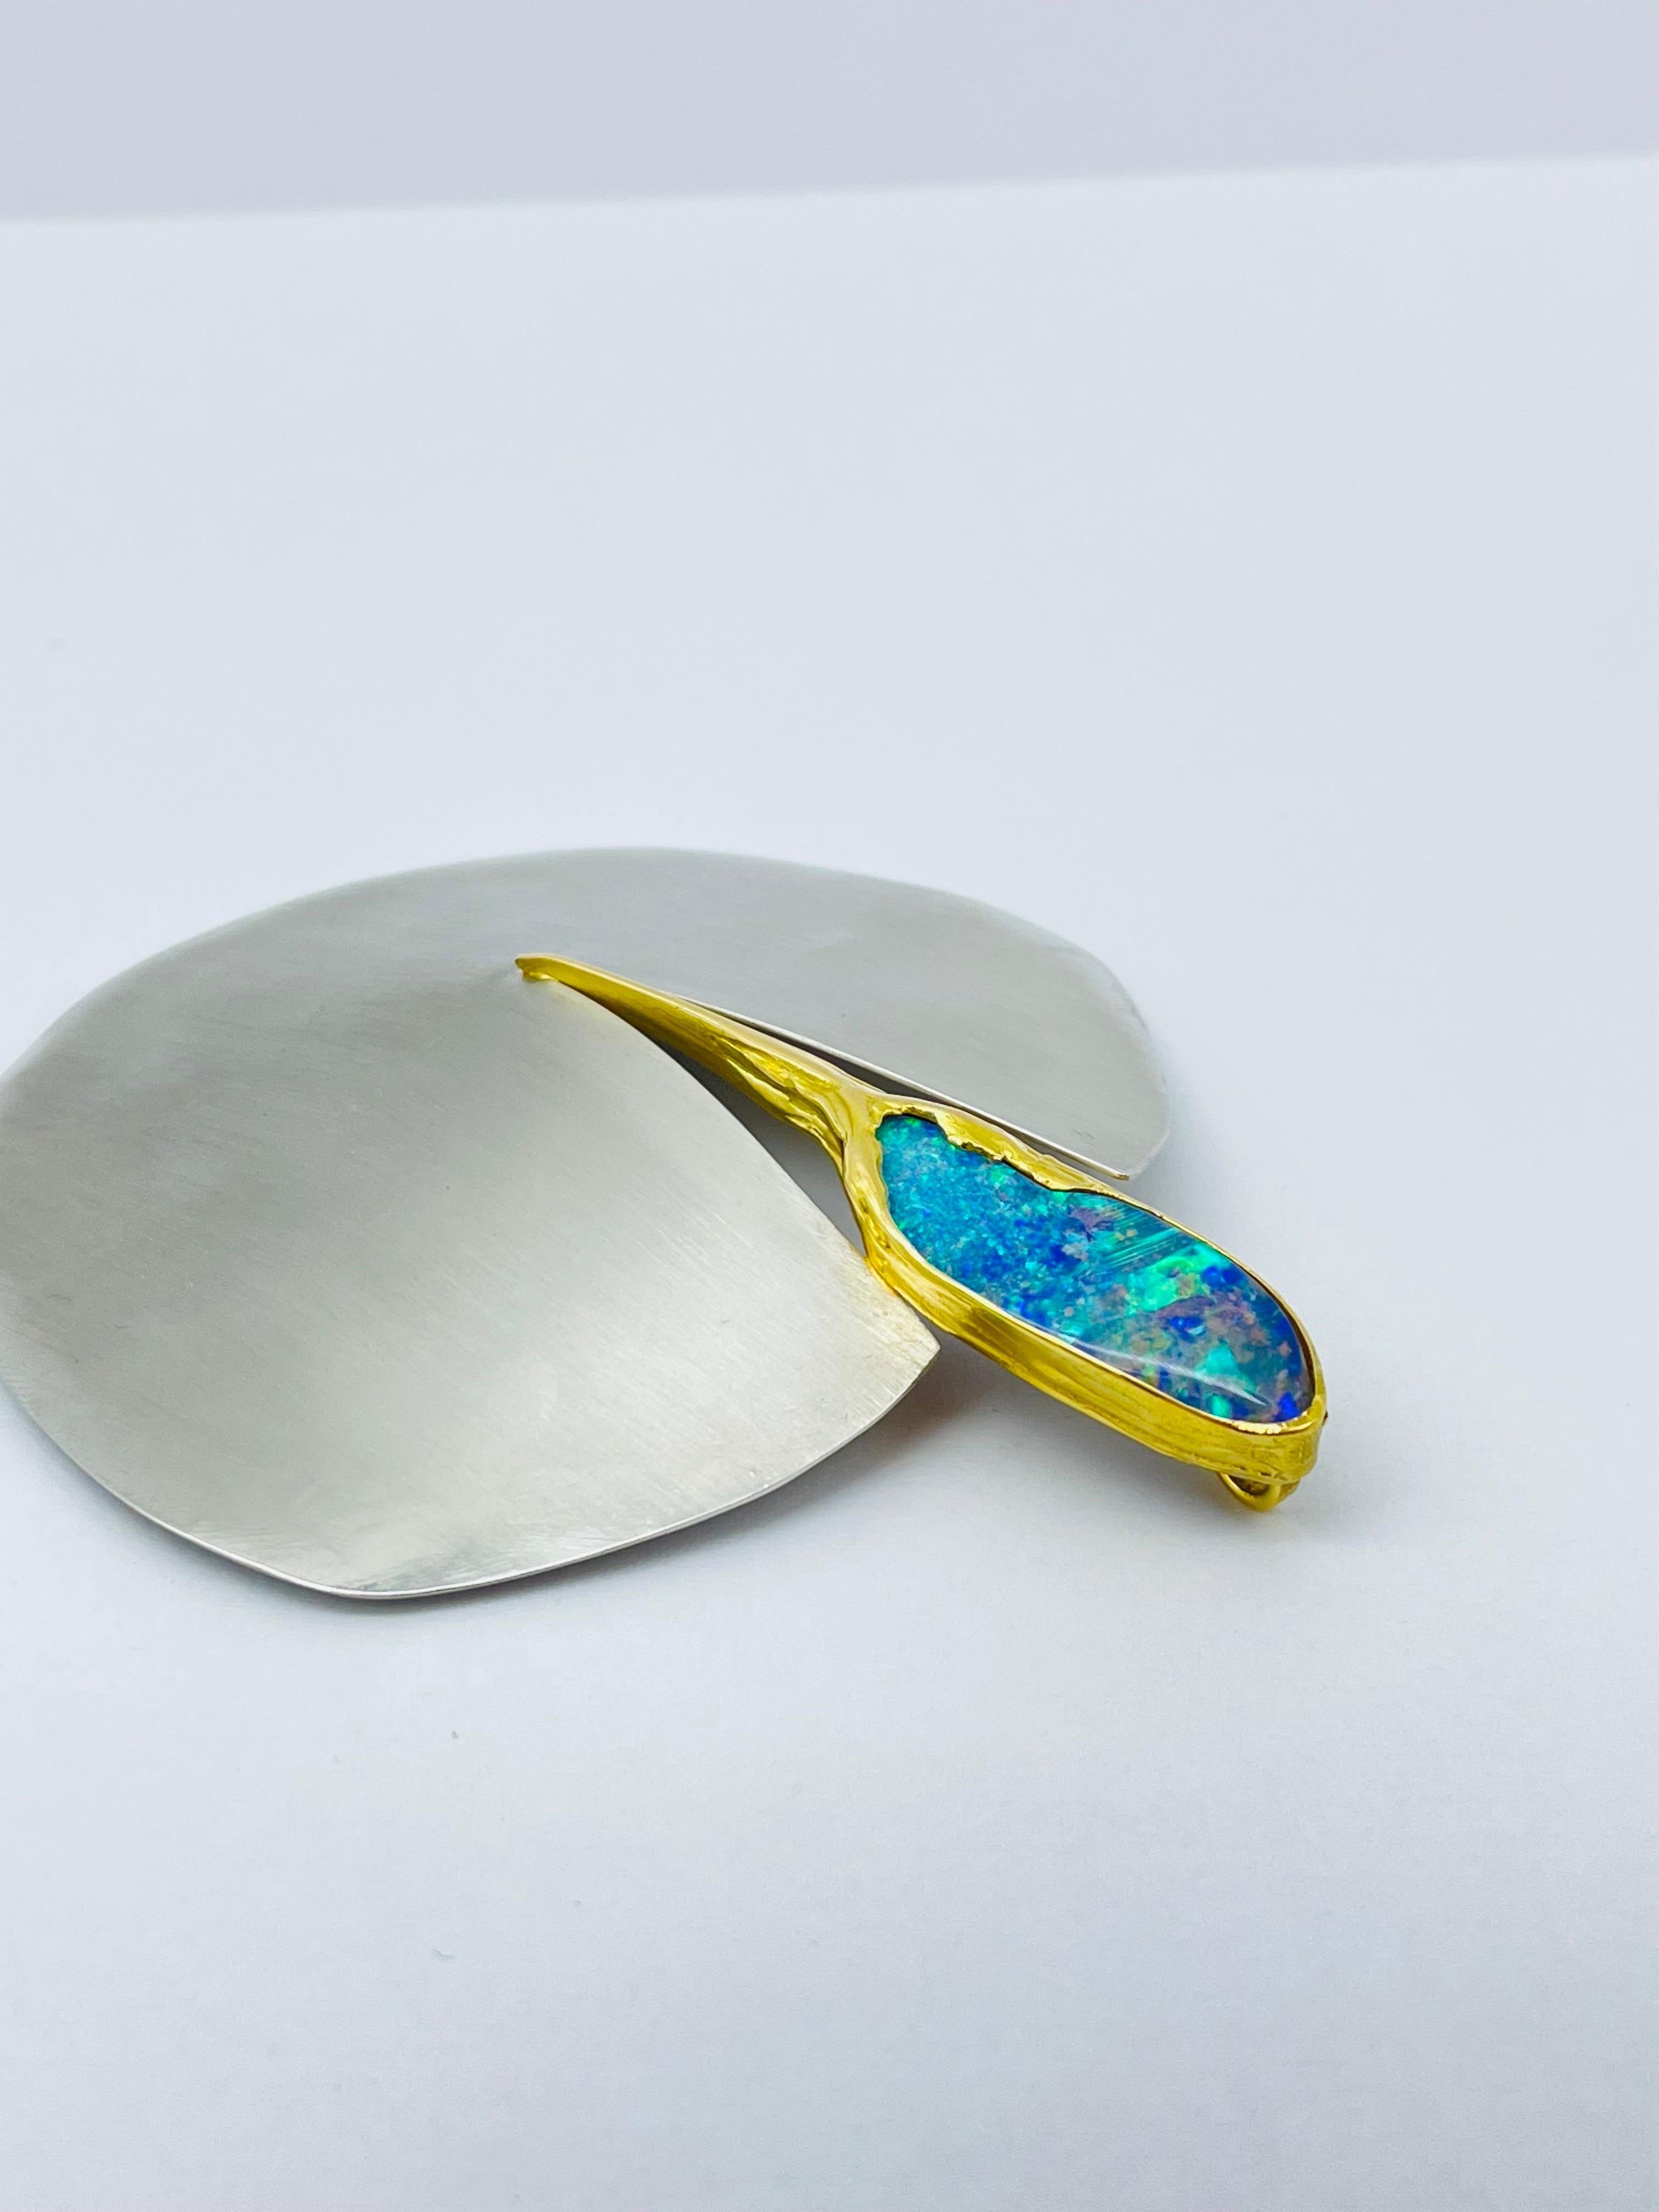 Bicolor Platinum/18k Gold Brooch-Pendant with Australian Opal, Unique For Sale 5